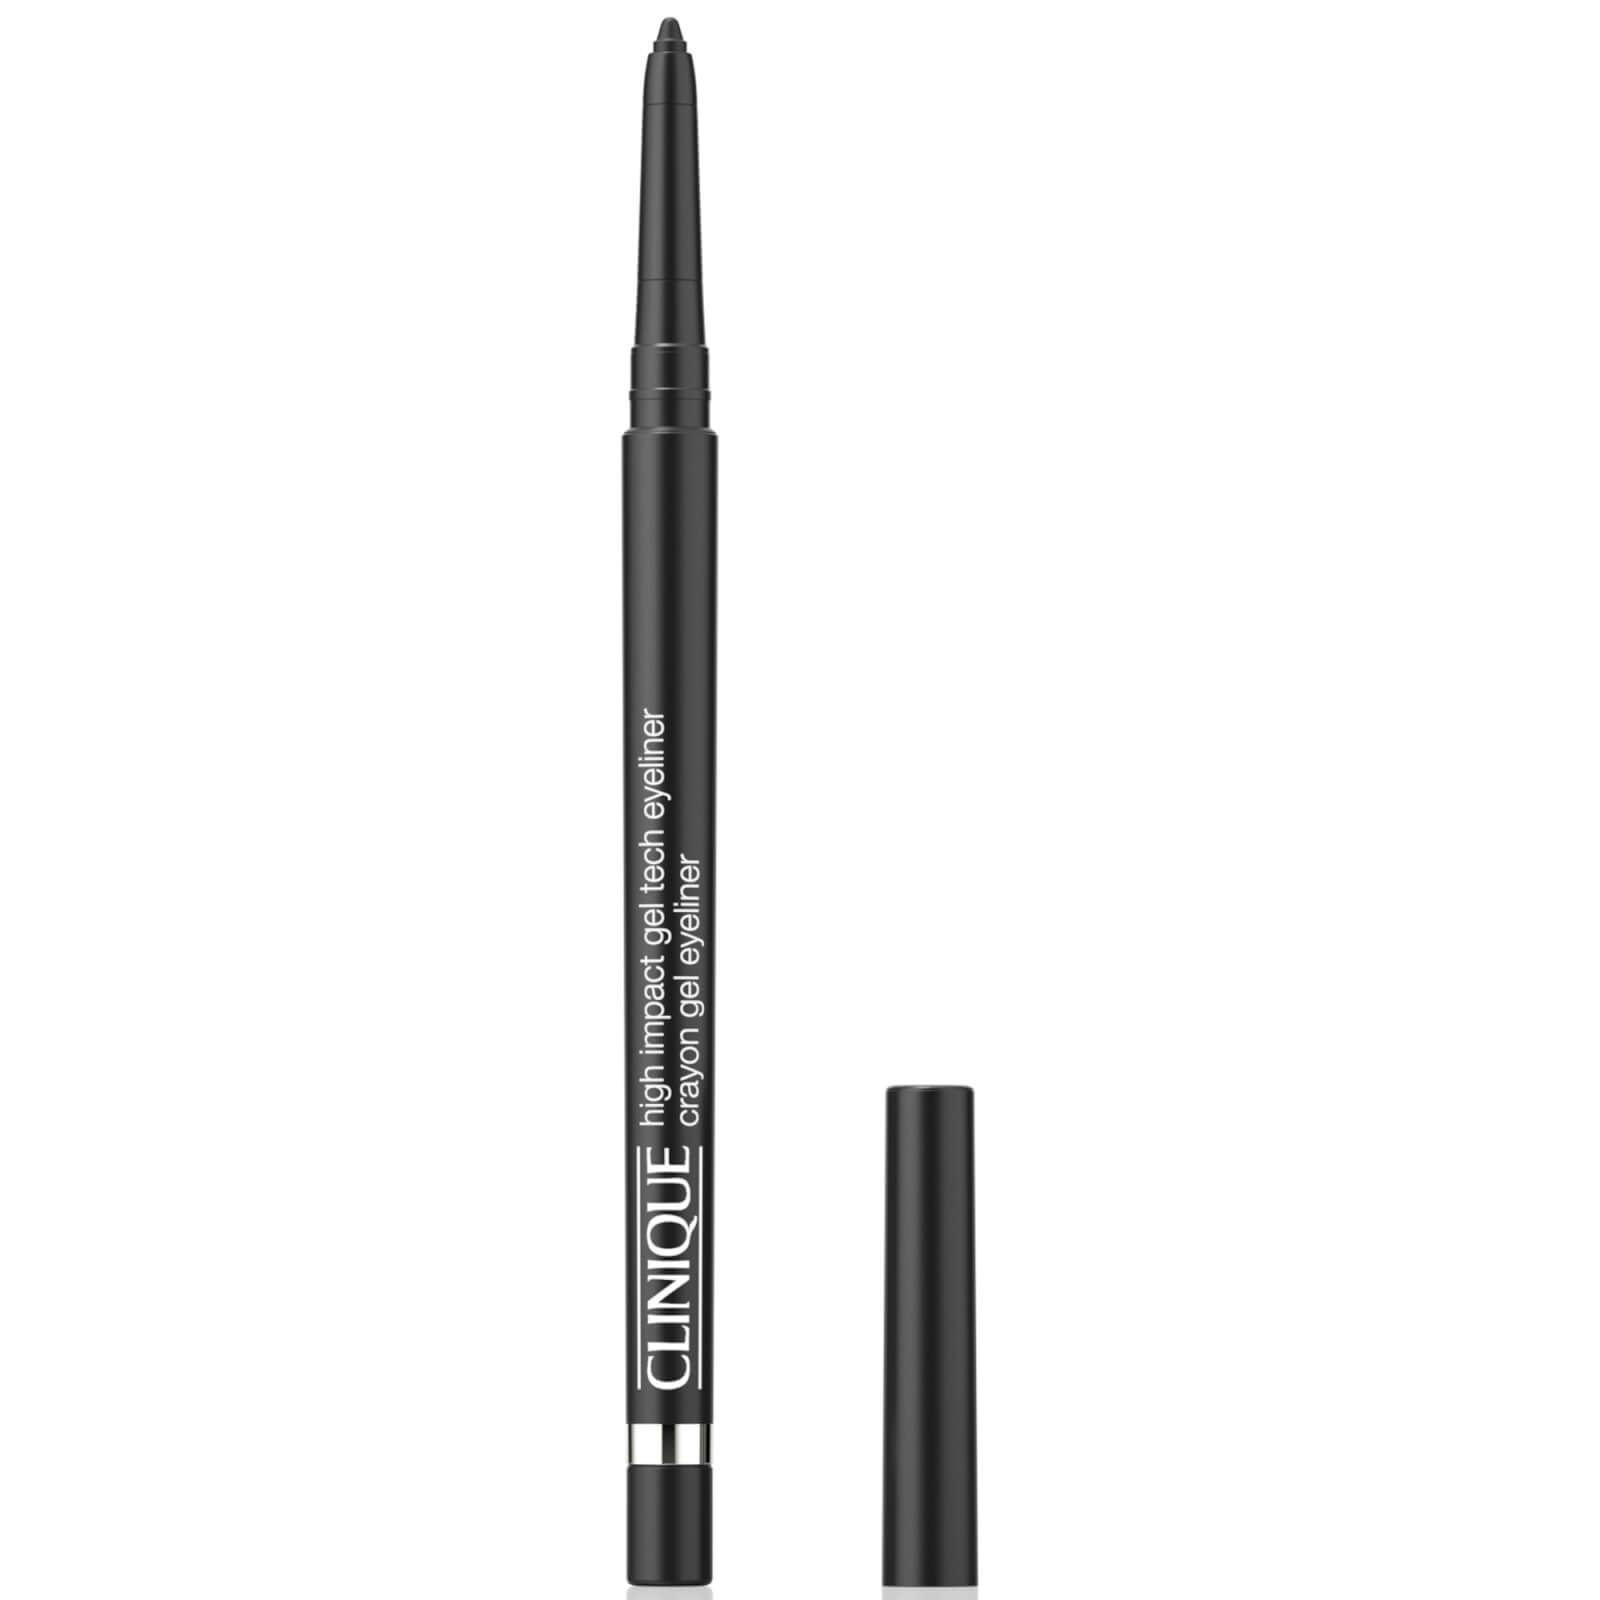 Photos - Eye / Eyebrow Pencil Clinique High Impact Gel Tech Eyeliner 0.35g - Intense Black VEH801A000 